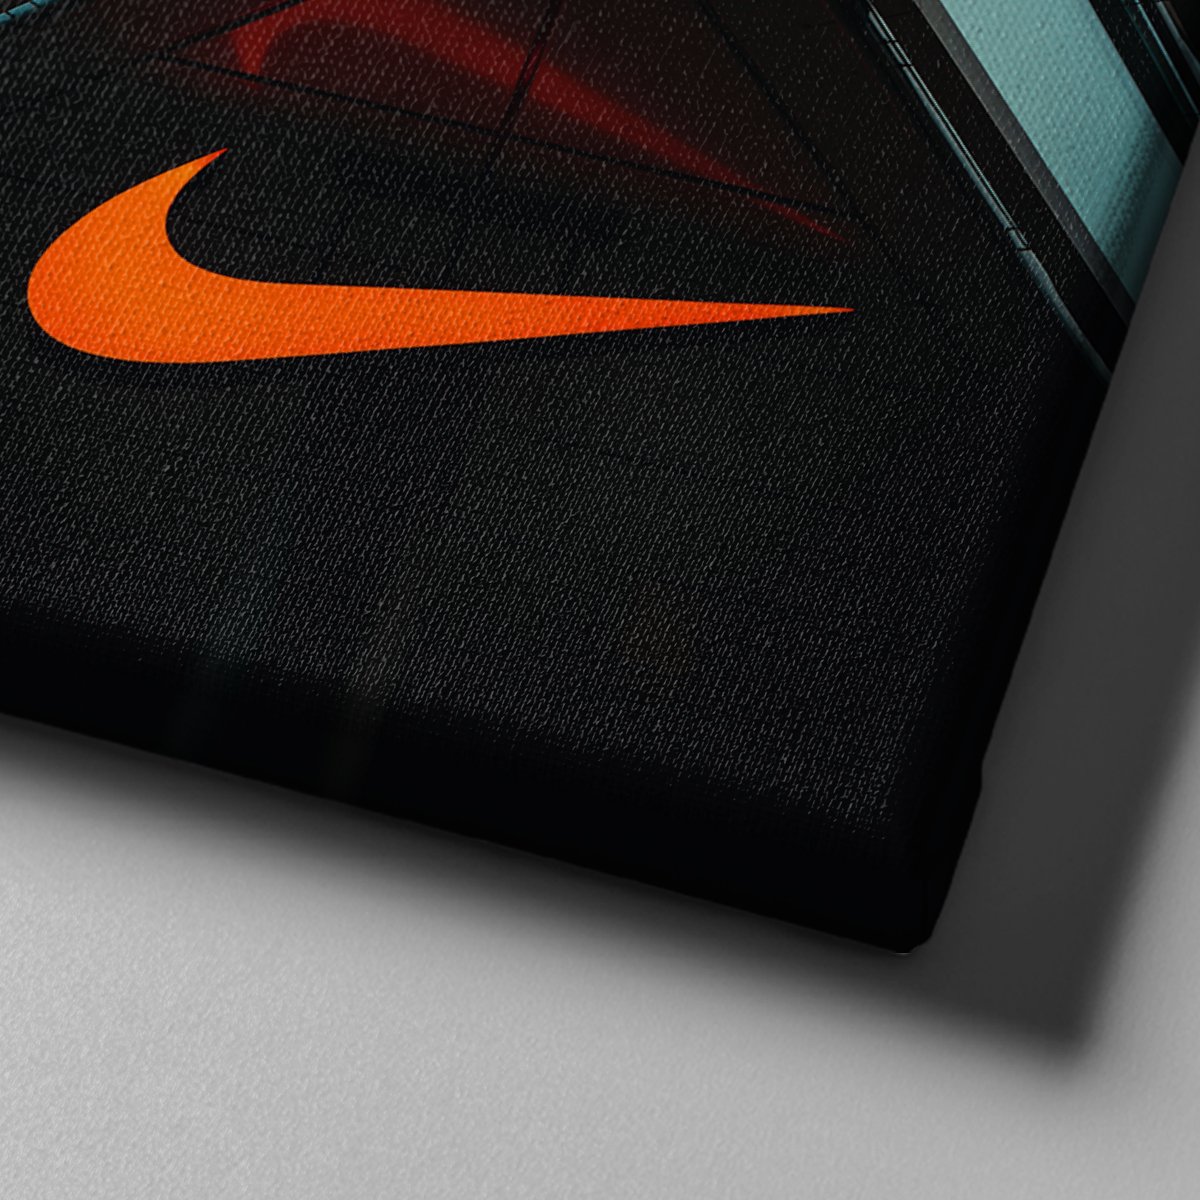 Market701 | Nike Mağazası Kanvas Tablo - 